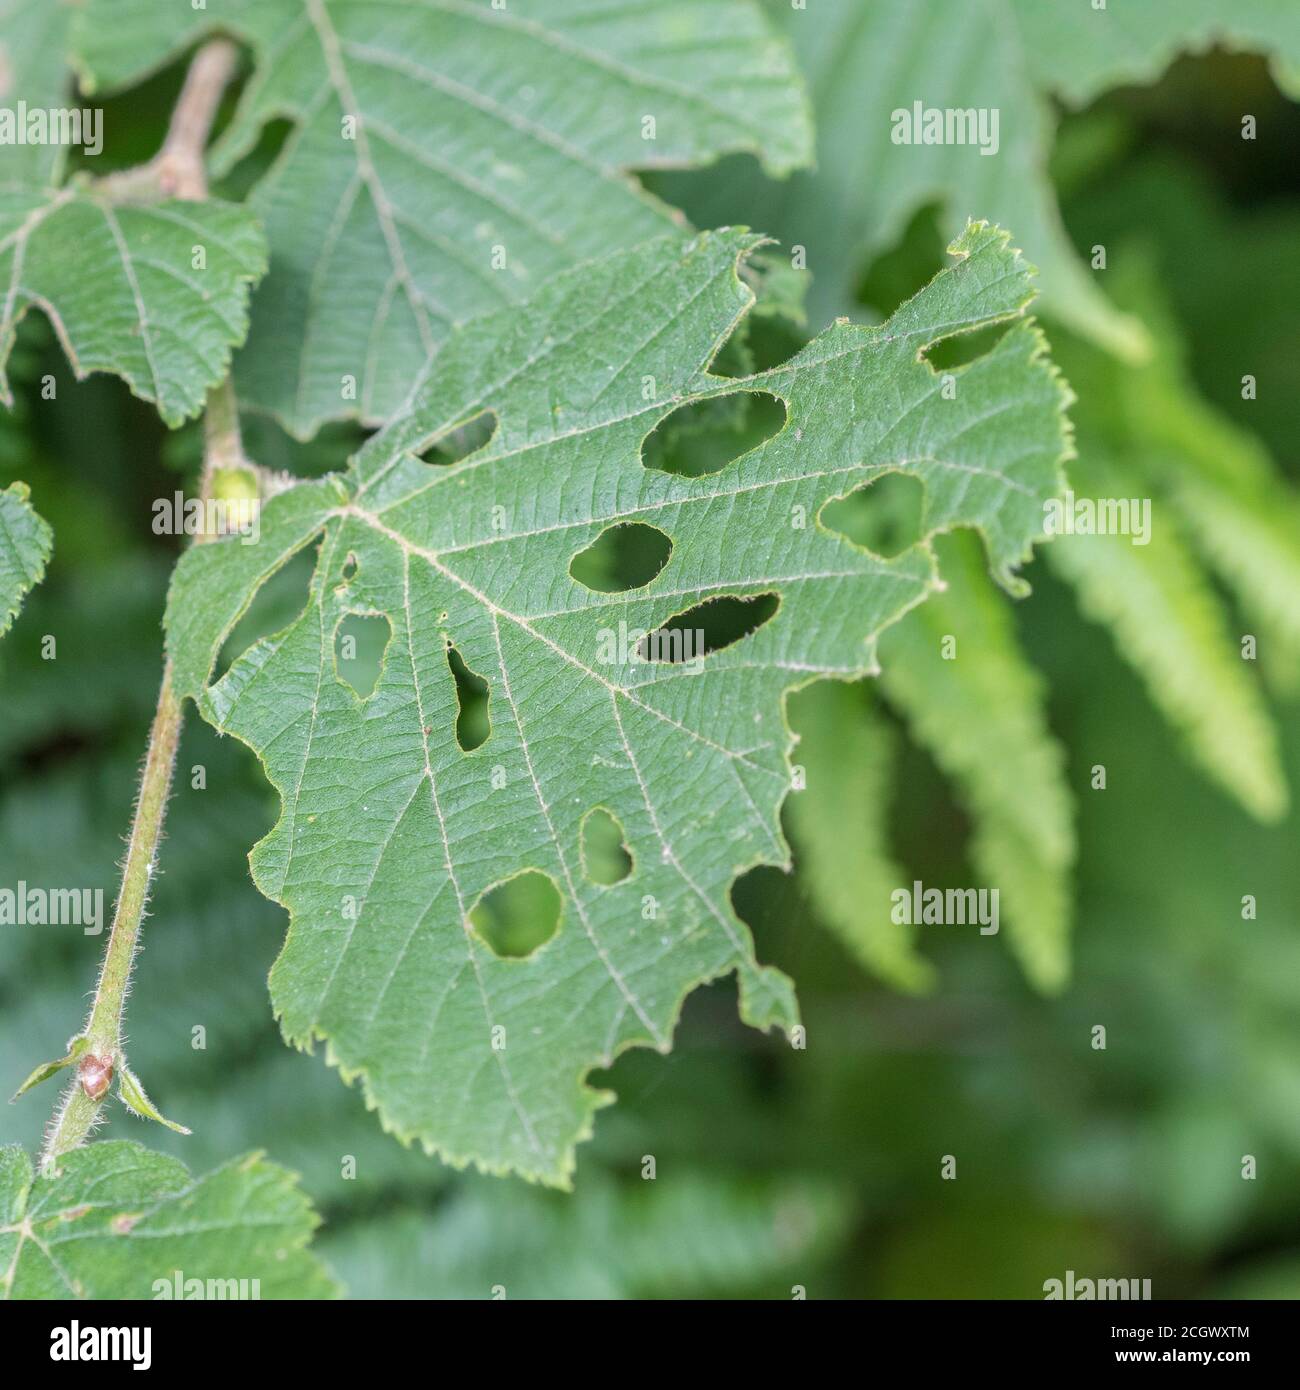 Blatt, das von Insekten weggefressen wird - möglicherweise ein Hazel-/Corylus avellana-Blatt oder Bramble-/Rubus fruticosus-Blatt (nicht bei der Aufnahme überprüft). Blattschäden Stockfoto